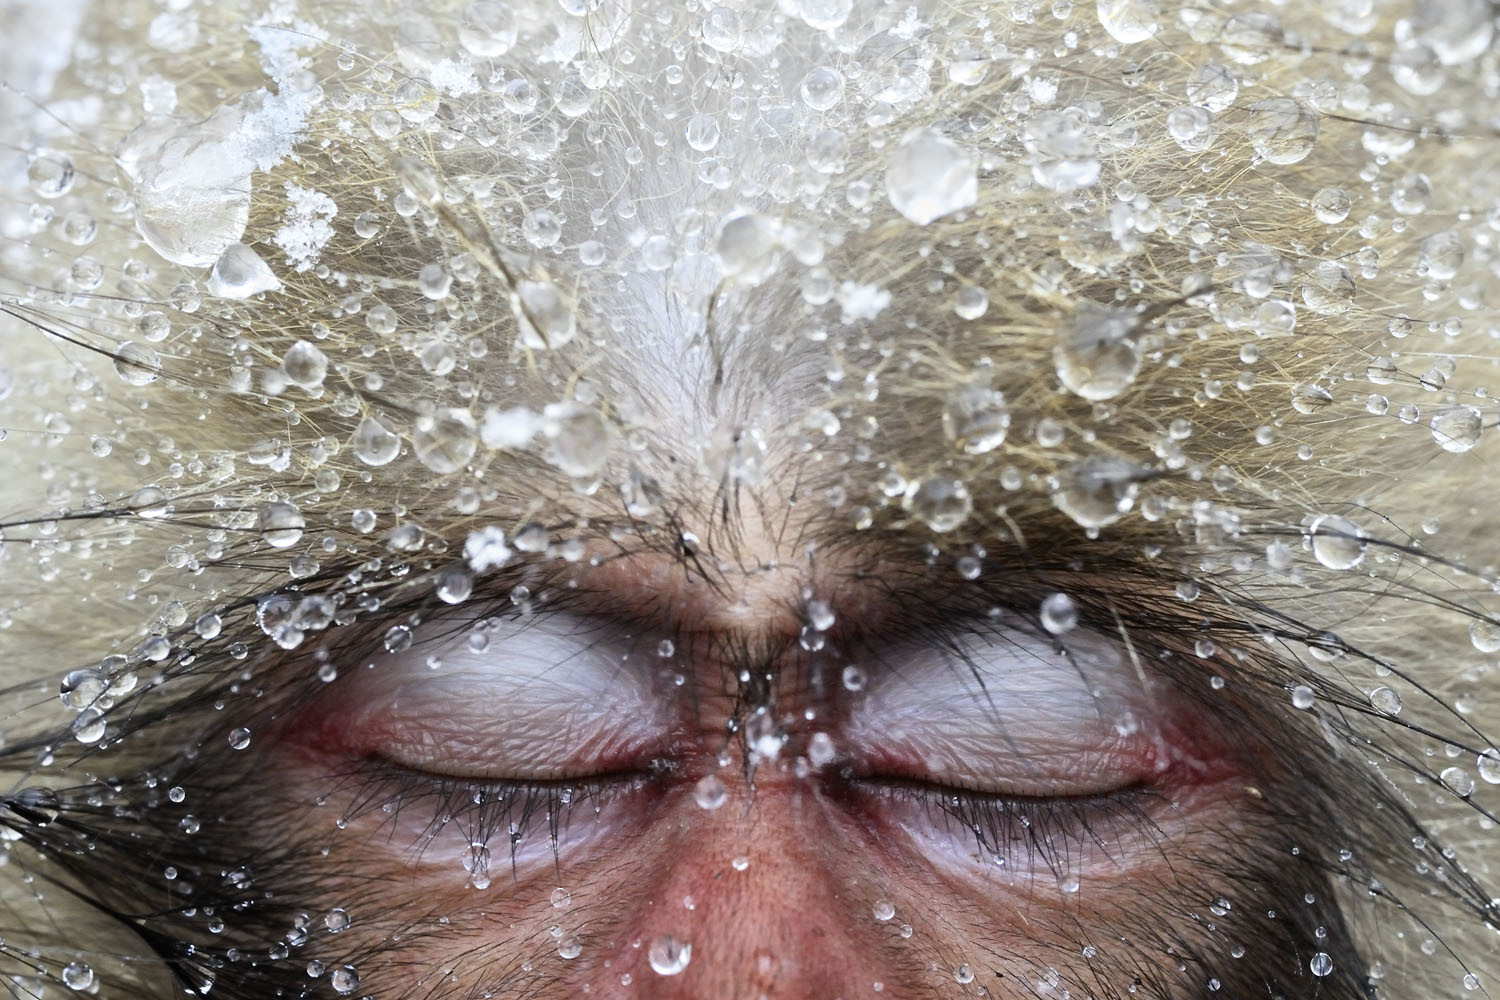 Jasper_Doest-Macaques-japone, foptografia para salvar el medio ambiente, macaco japones congelado